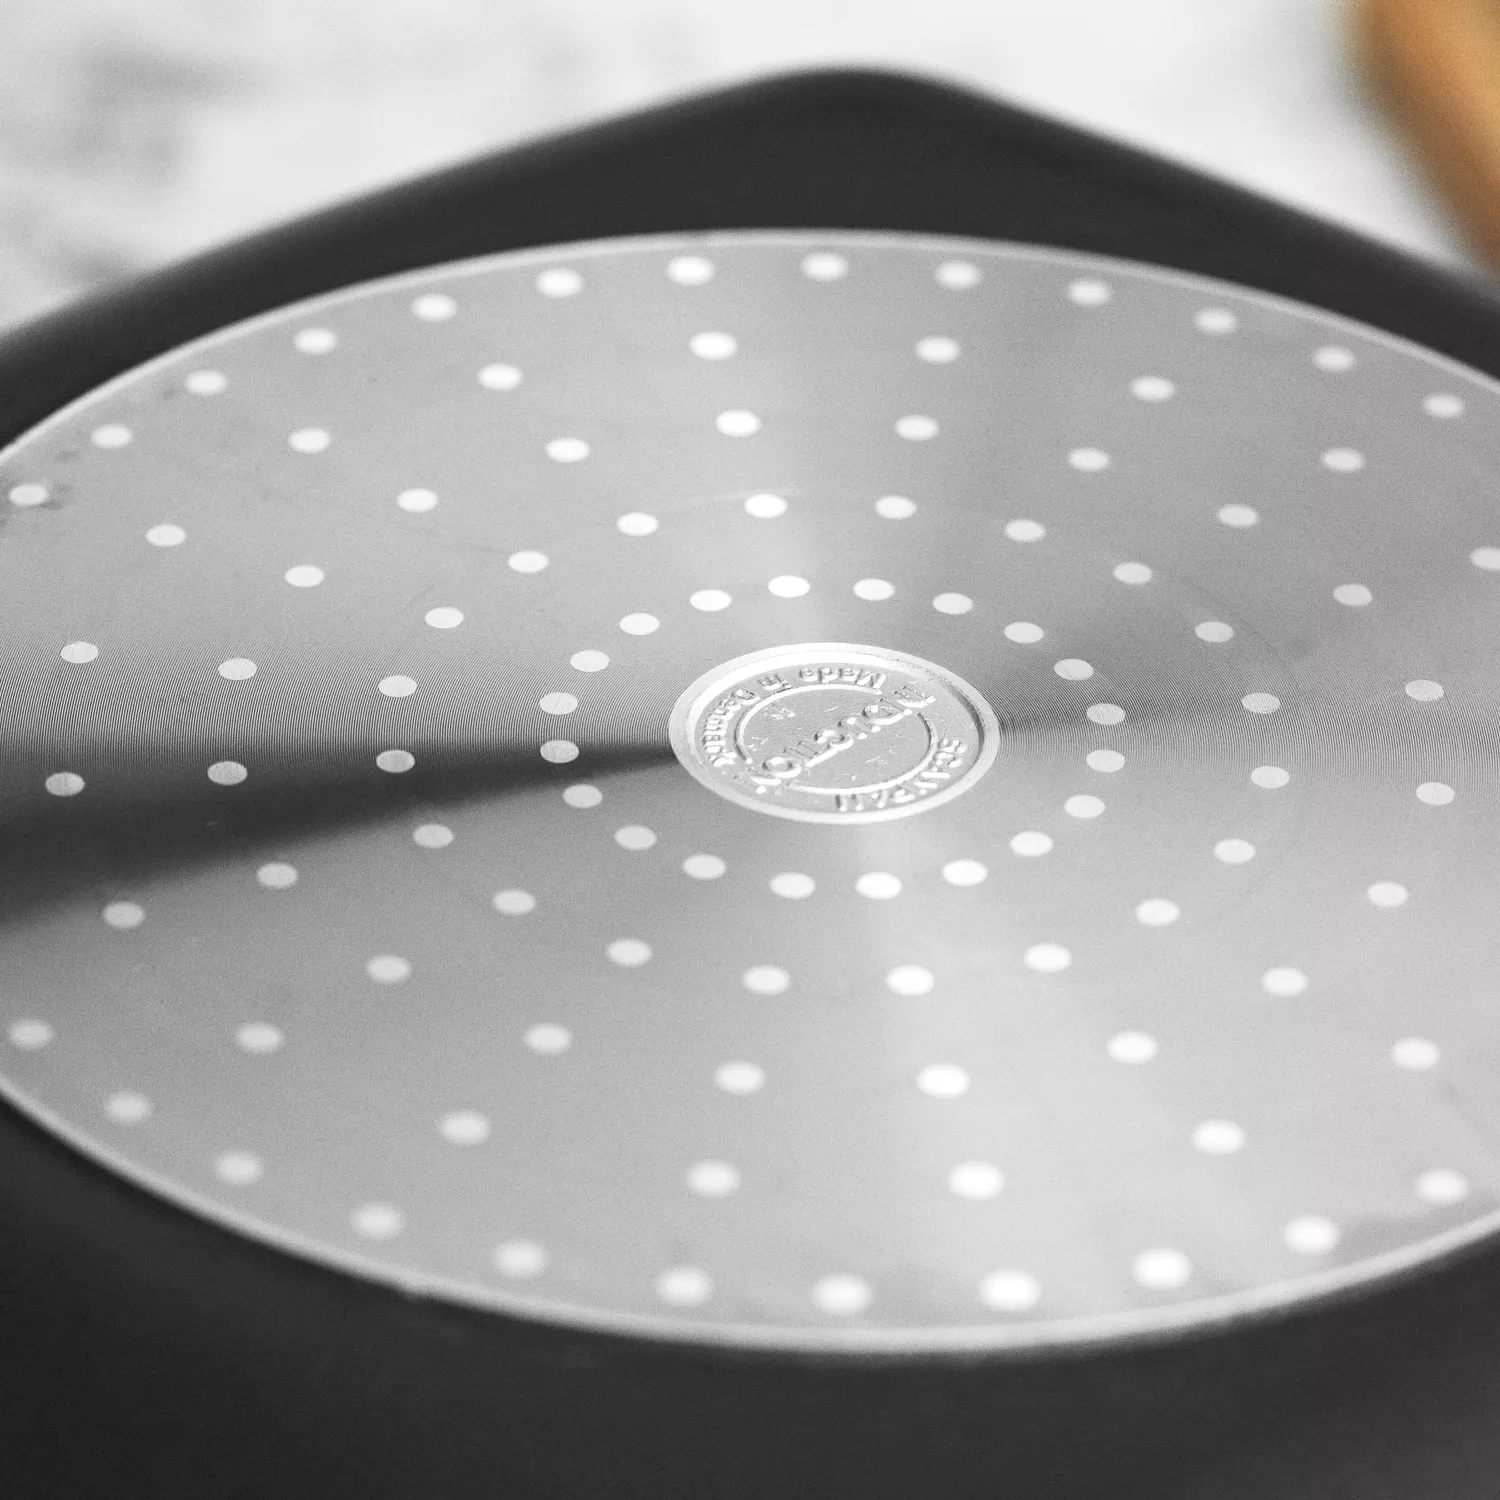 Scanpan Pro IQ Grill Pan